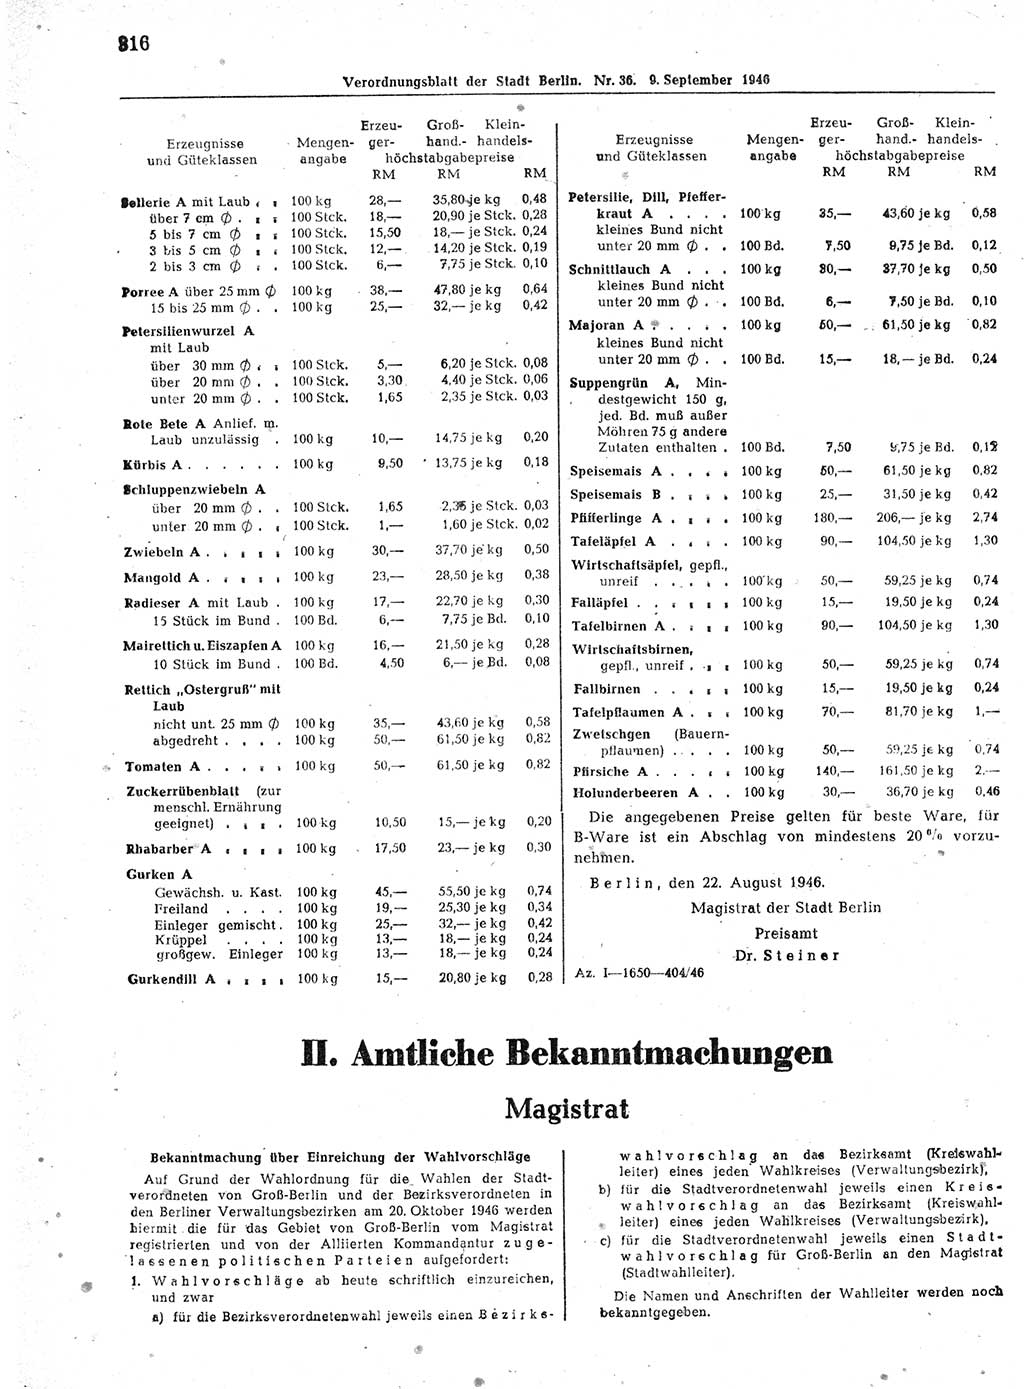 Verordnungsblatt (VOBl.) der Stadt Berlin, für Groß-Berlin 1946, Seite 316 (VOBl. Bln. 1946, S. 316)